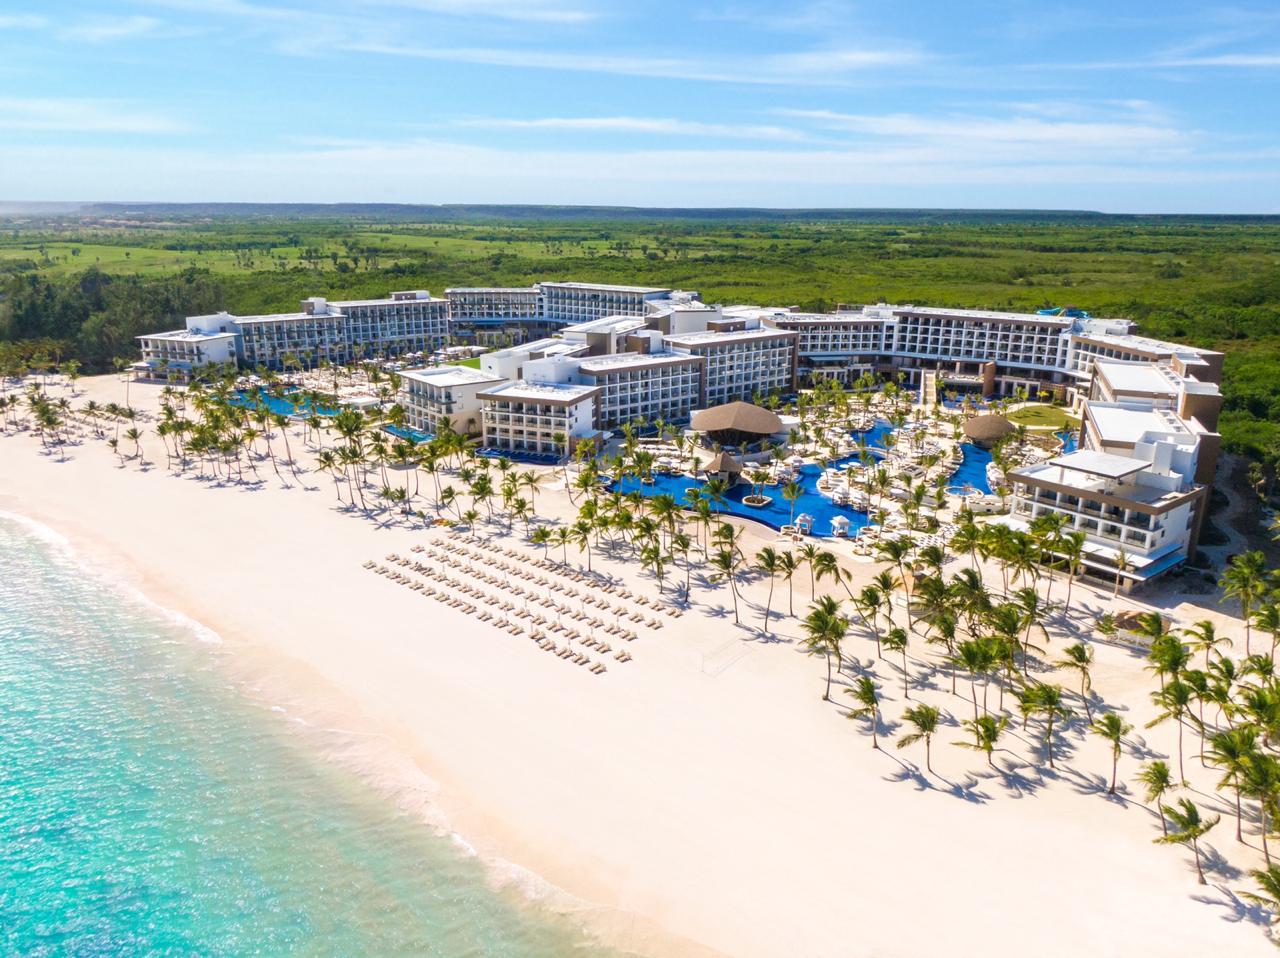 Playa Hotels & Resorts inaugura dos nuevos resorts en Cap Cana con presencia del presidente Medina